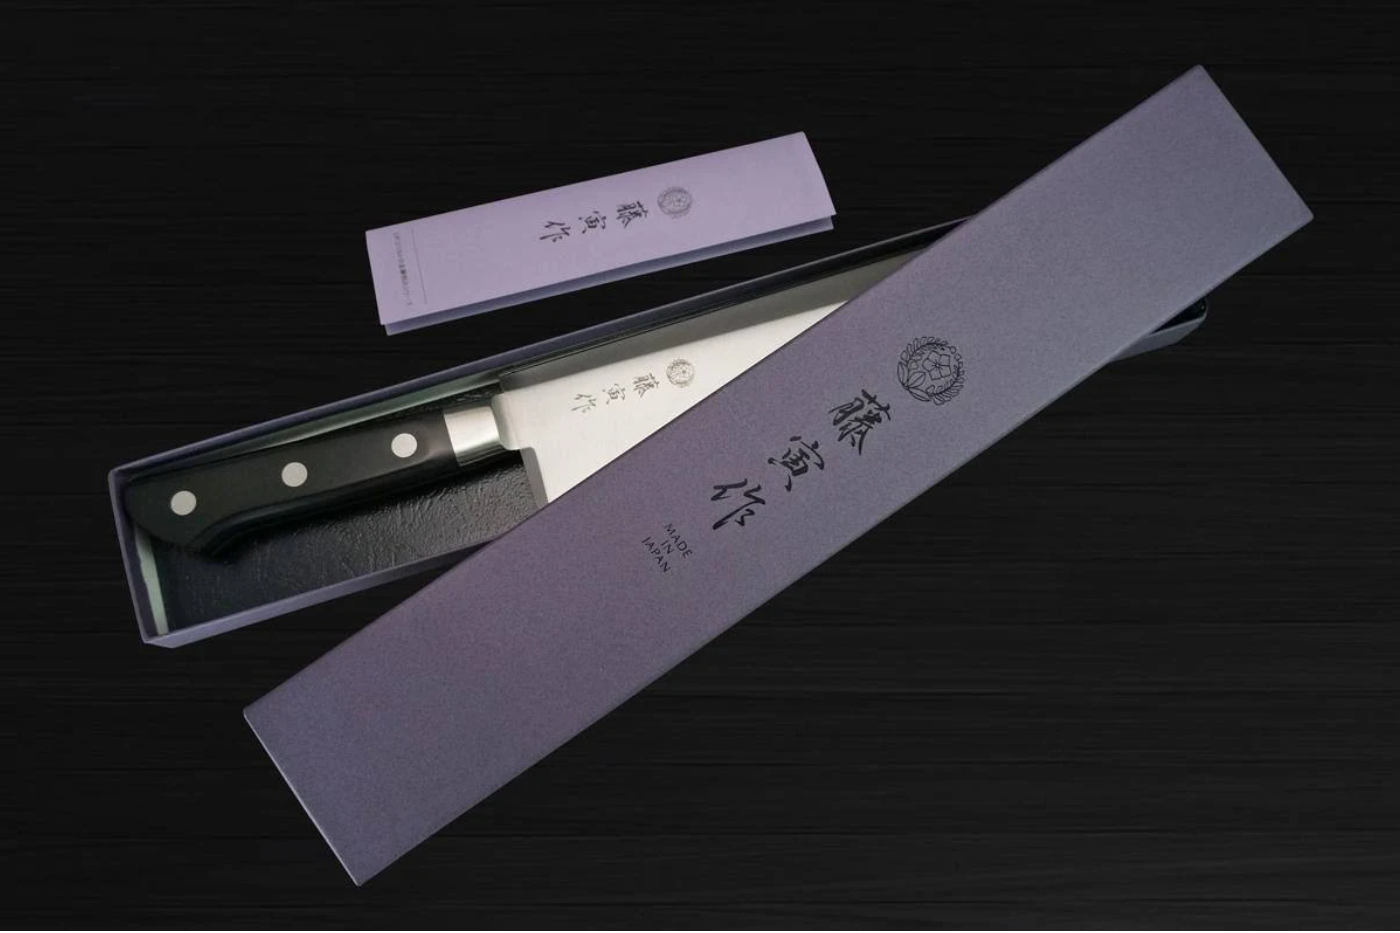 japanese-knives-dao-nhat-dao-bep-chinh-hang-noi-dia-cao-cap